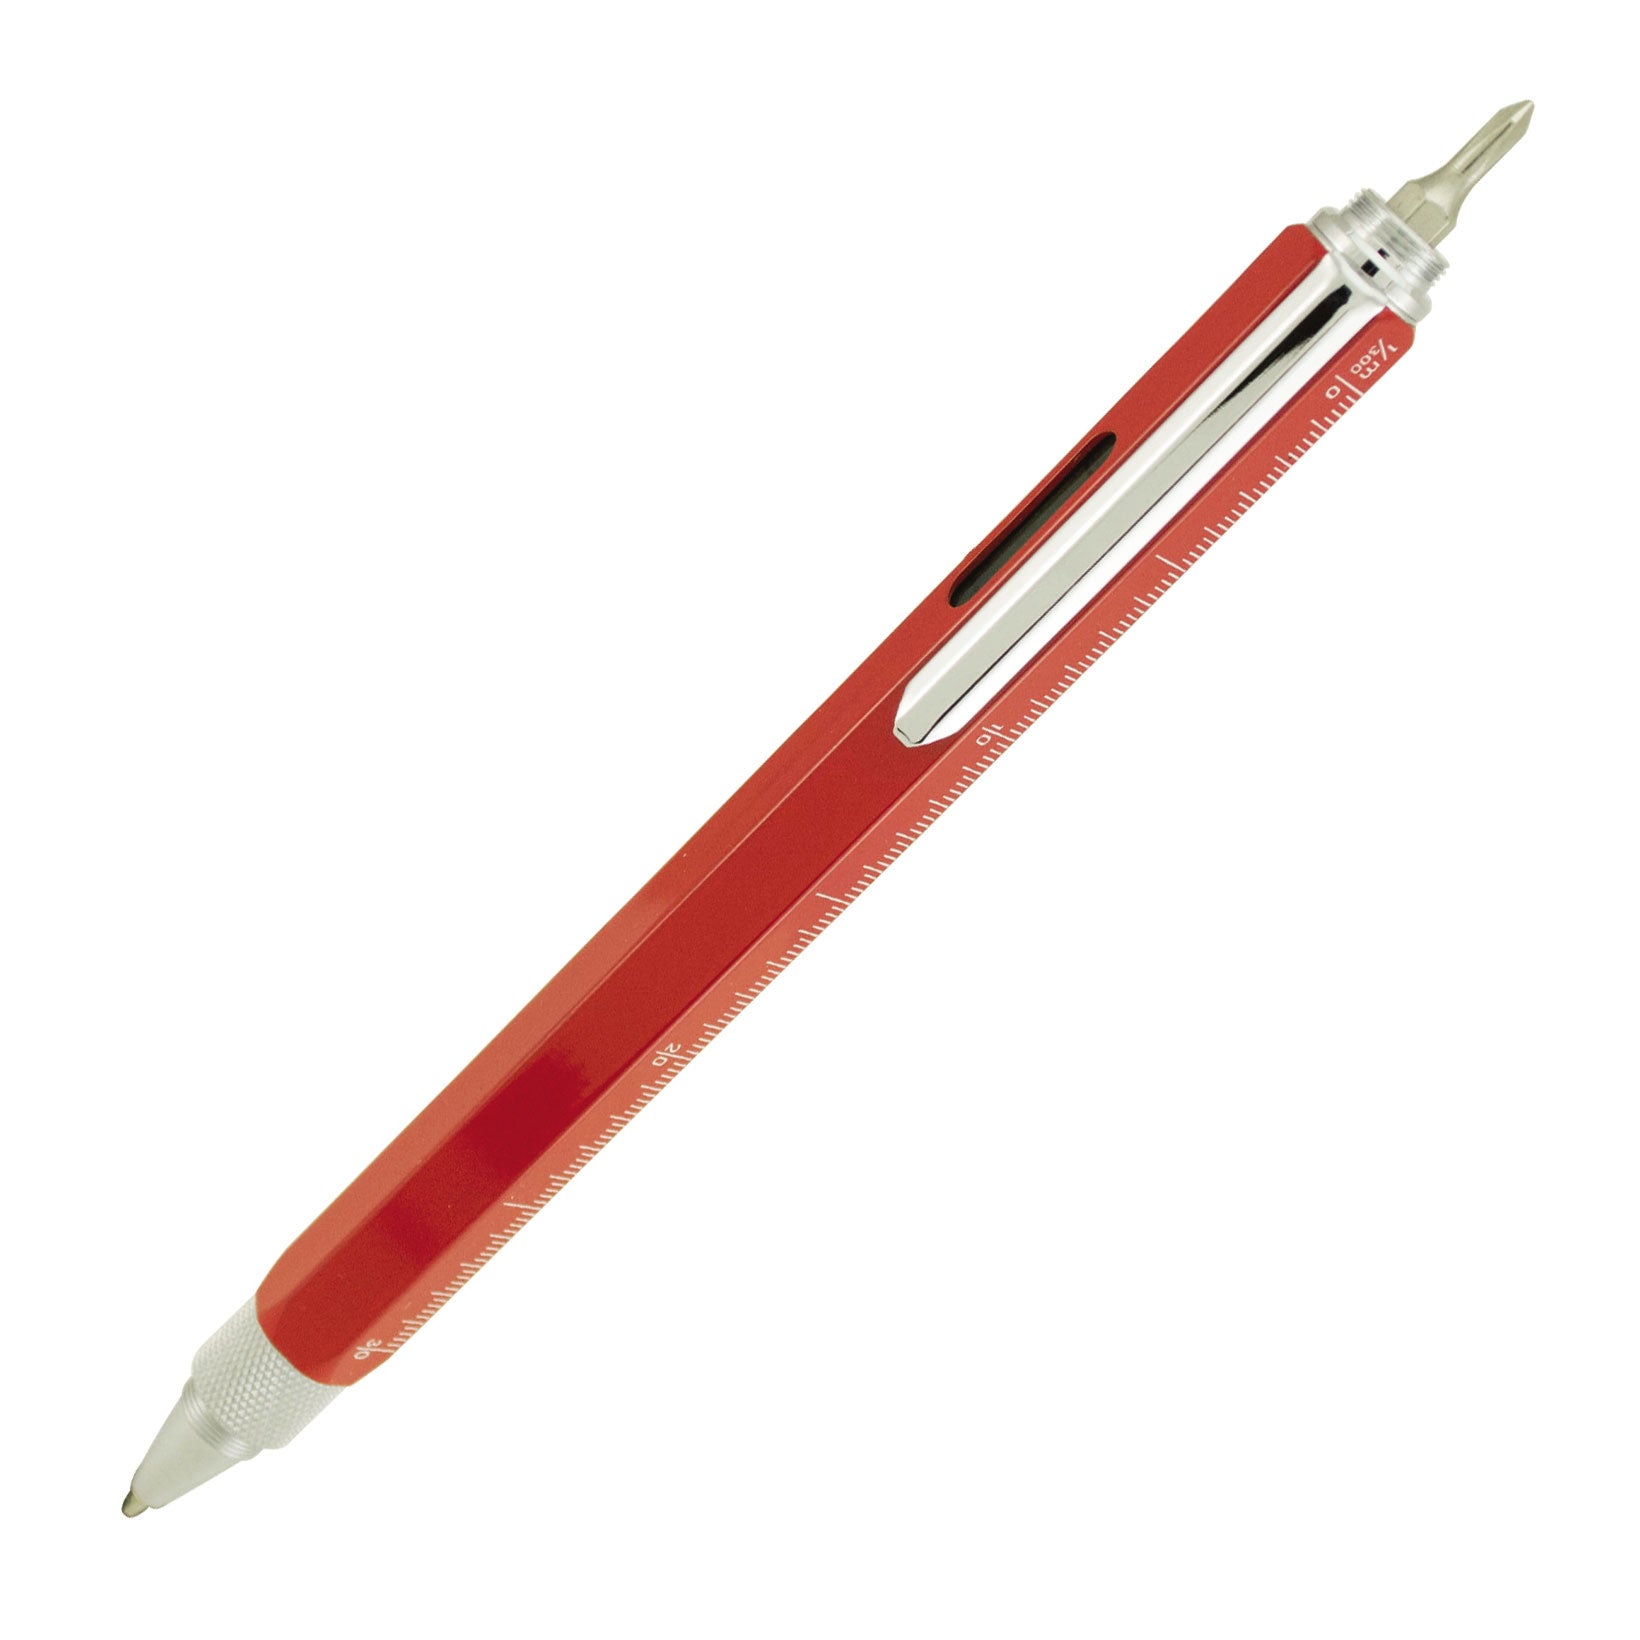 Monteverde Tool Pen Stylus Ballpoint Pen Red